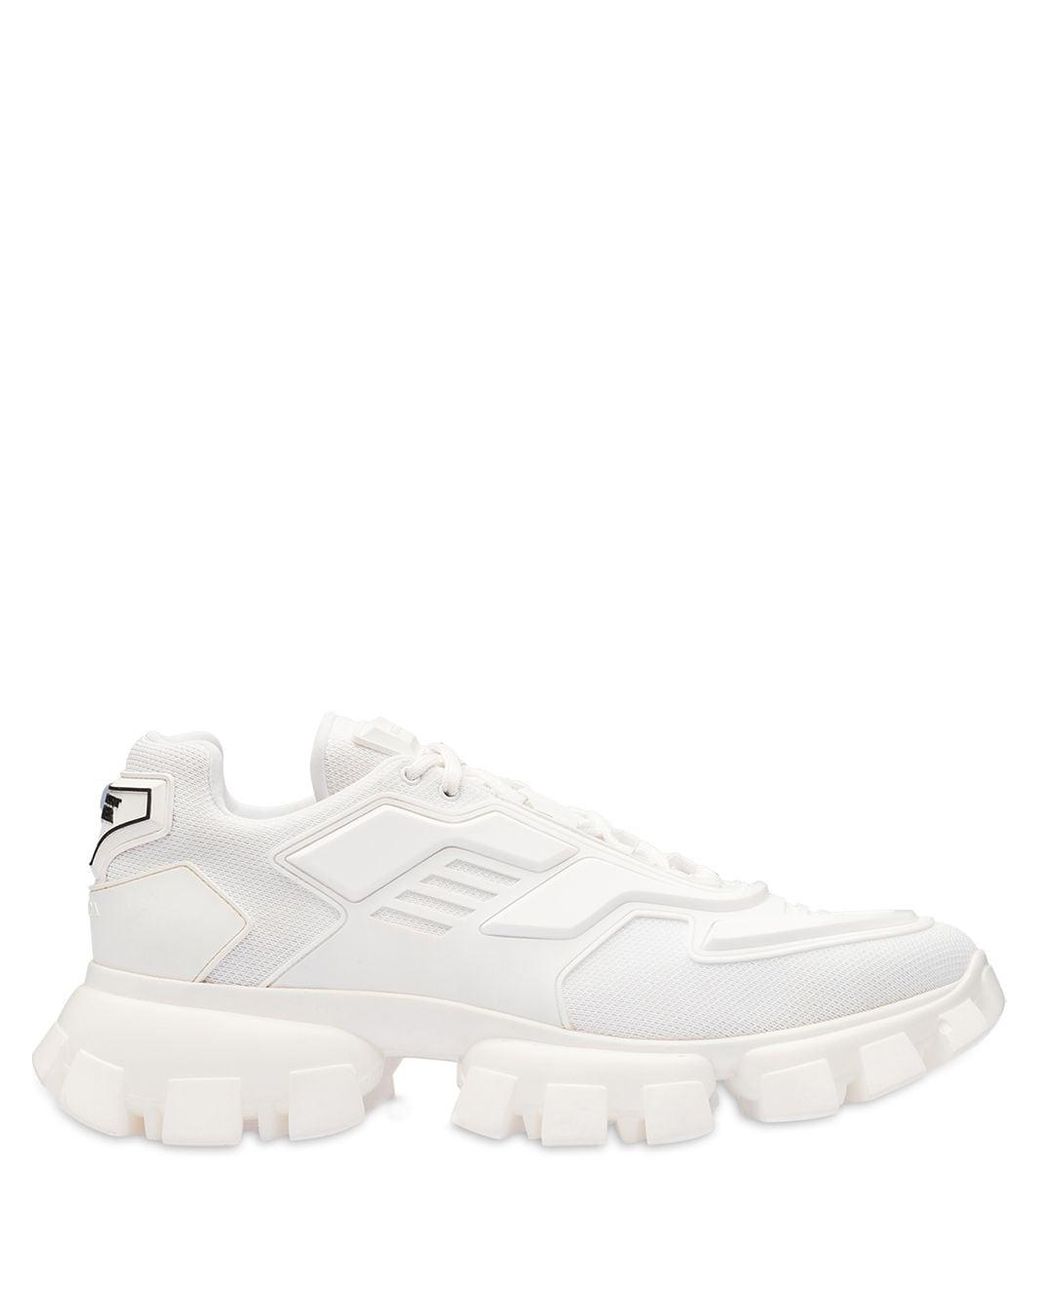 Prada Cloudbust Thunder Sneakers in White for Men - Lyst